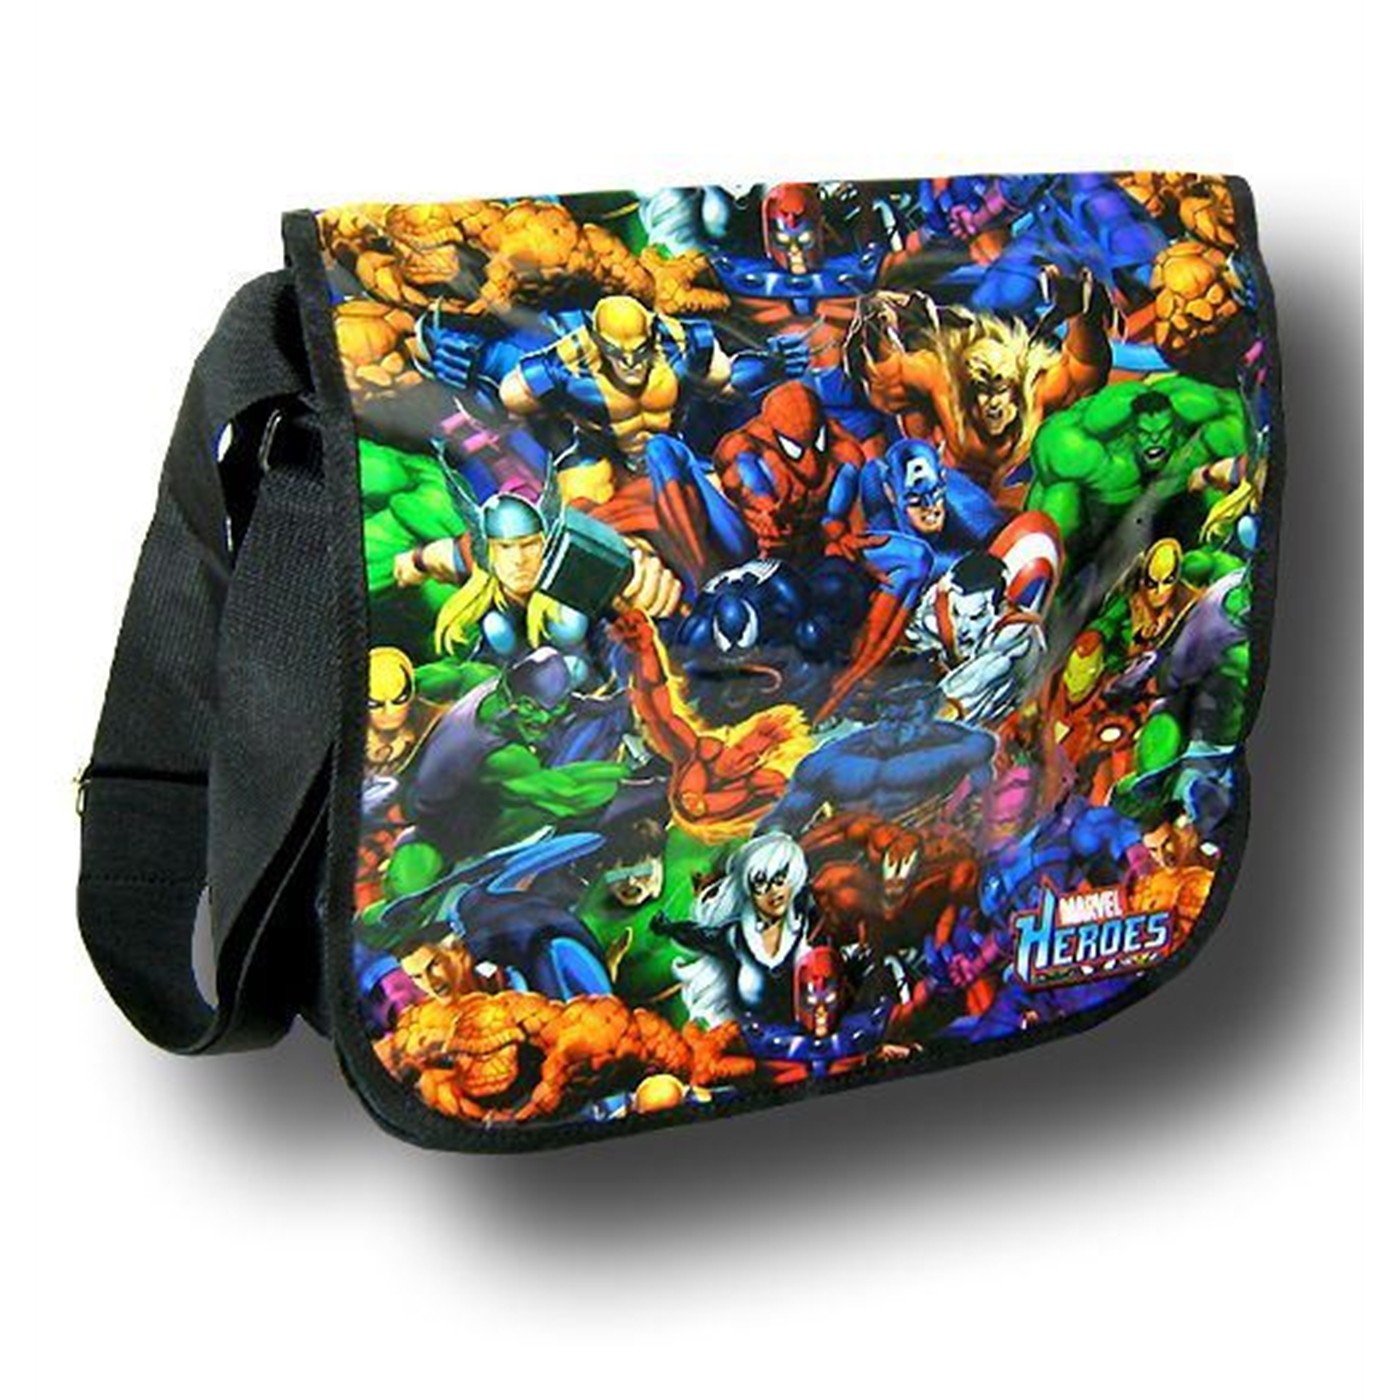 Marvel Heroes Messenger Bag